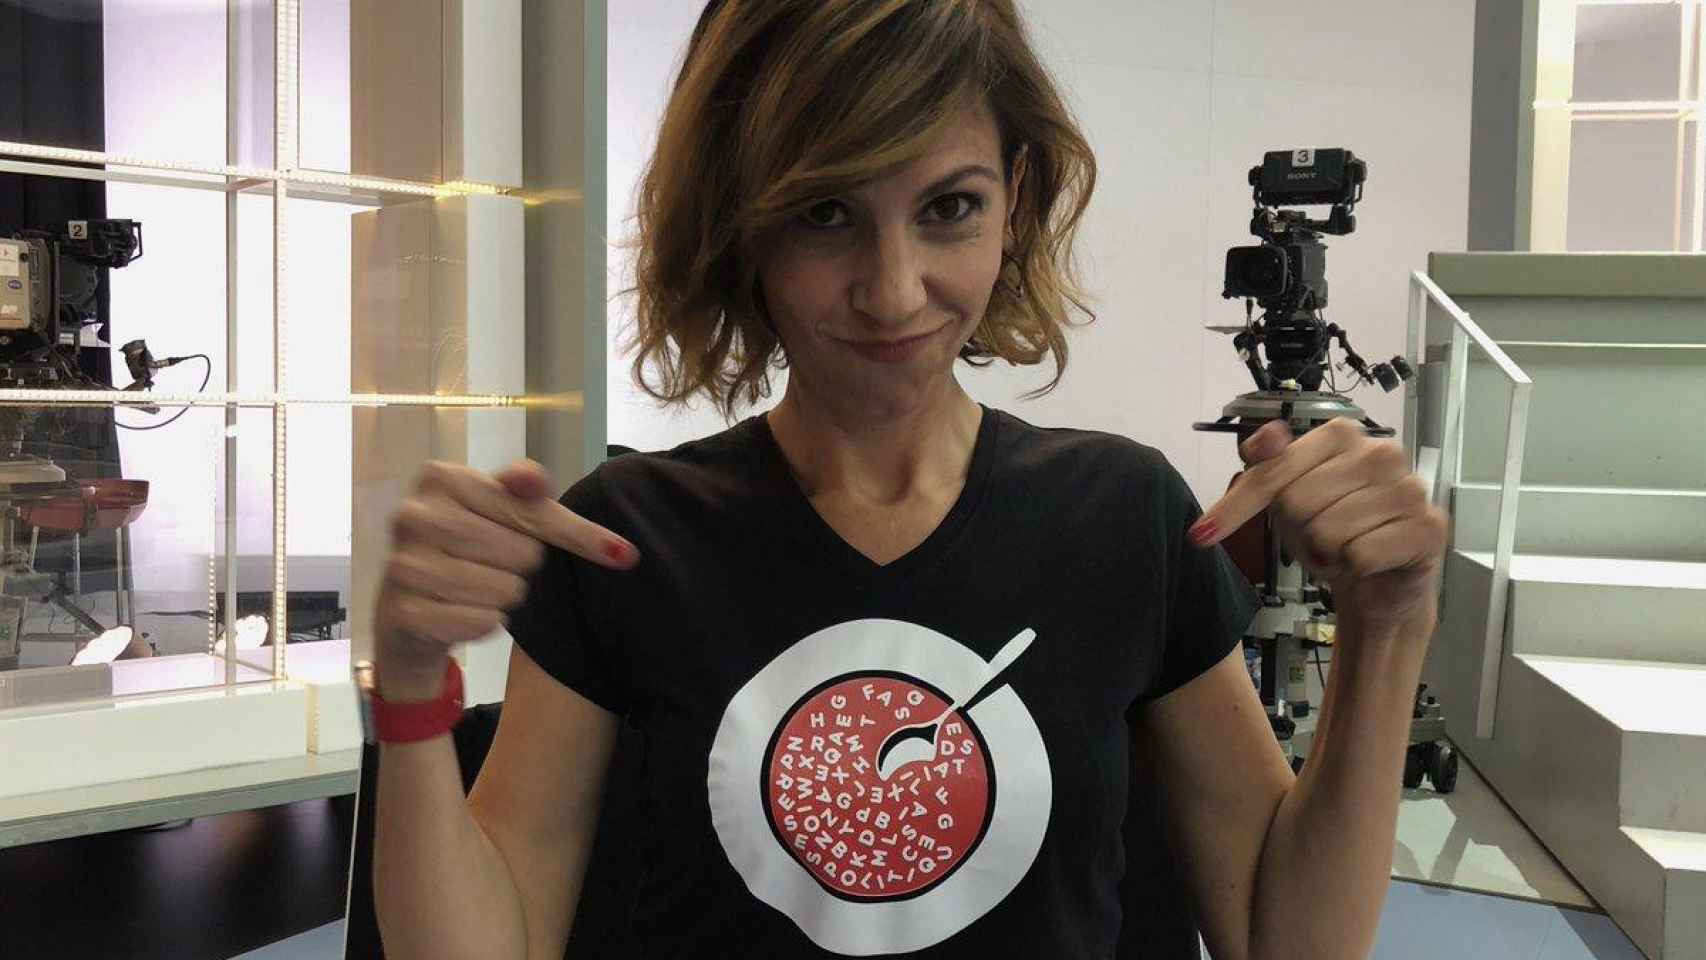 La presentadora de FAQs de TV3, Cristina Puig, con la camiseta que lució durante el programa de los 'Prisis Pilítiquis' / @FAQSTV3